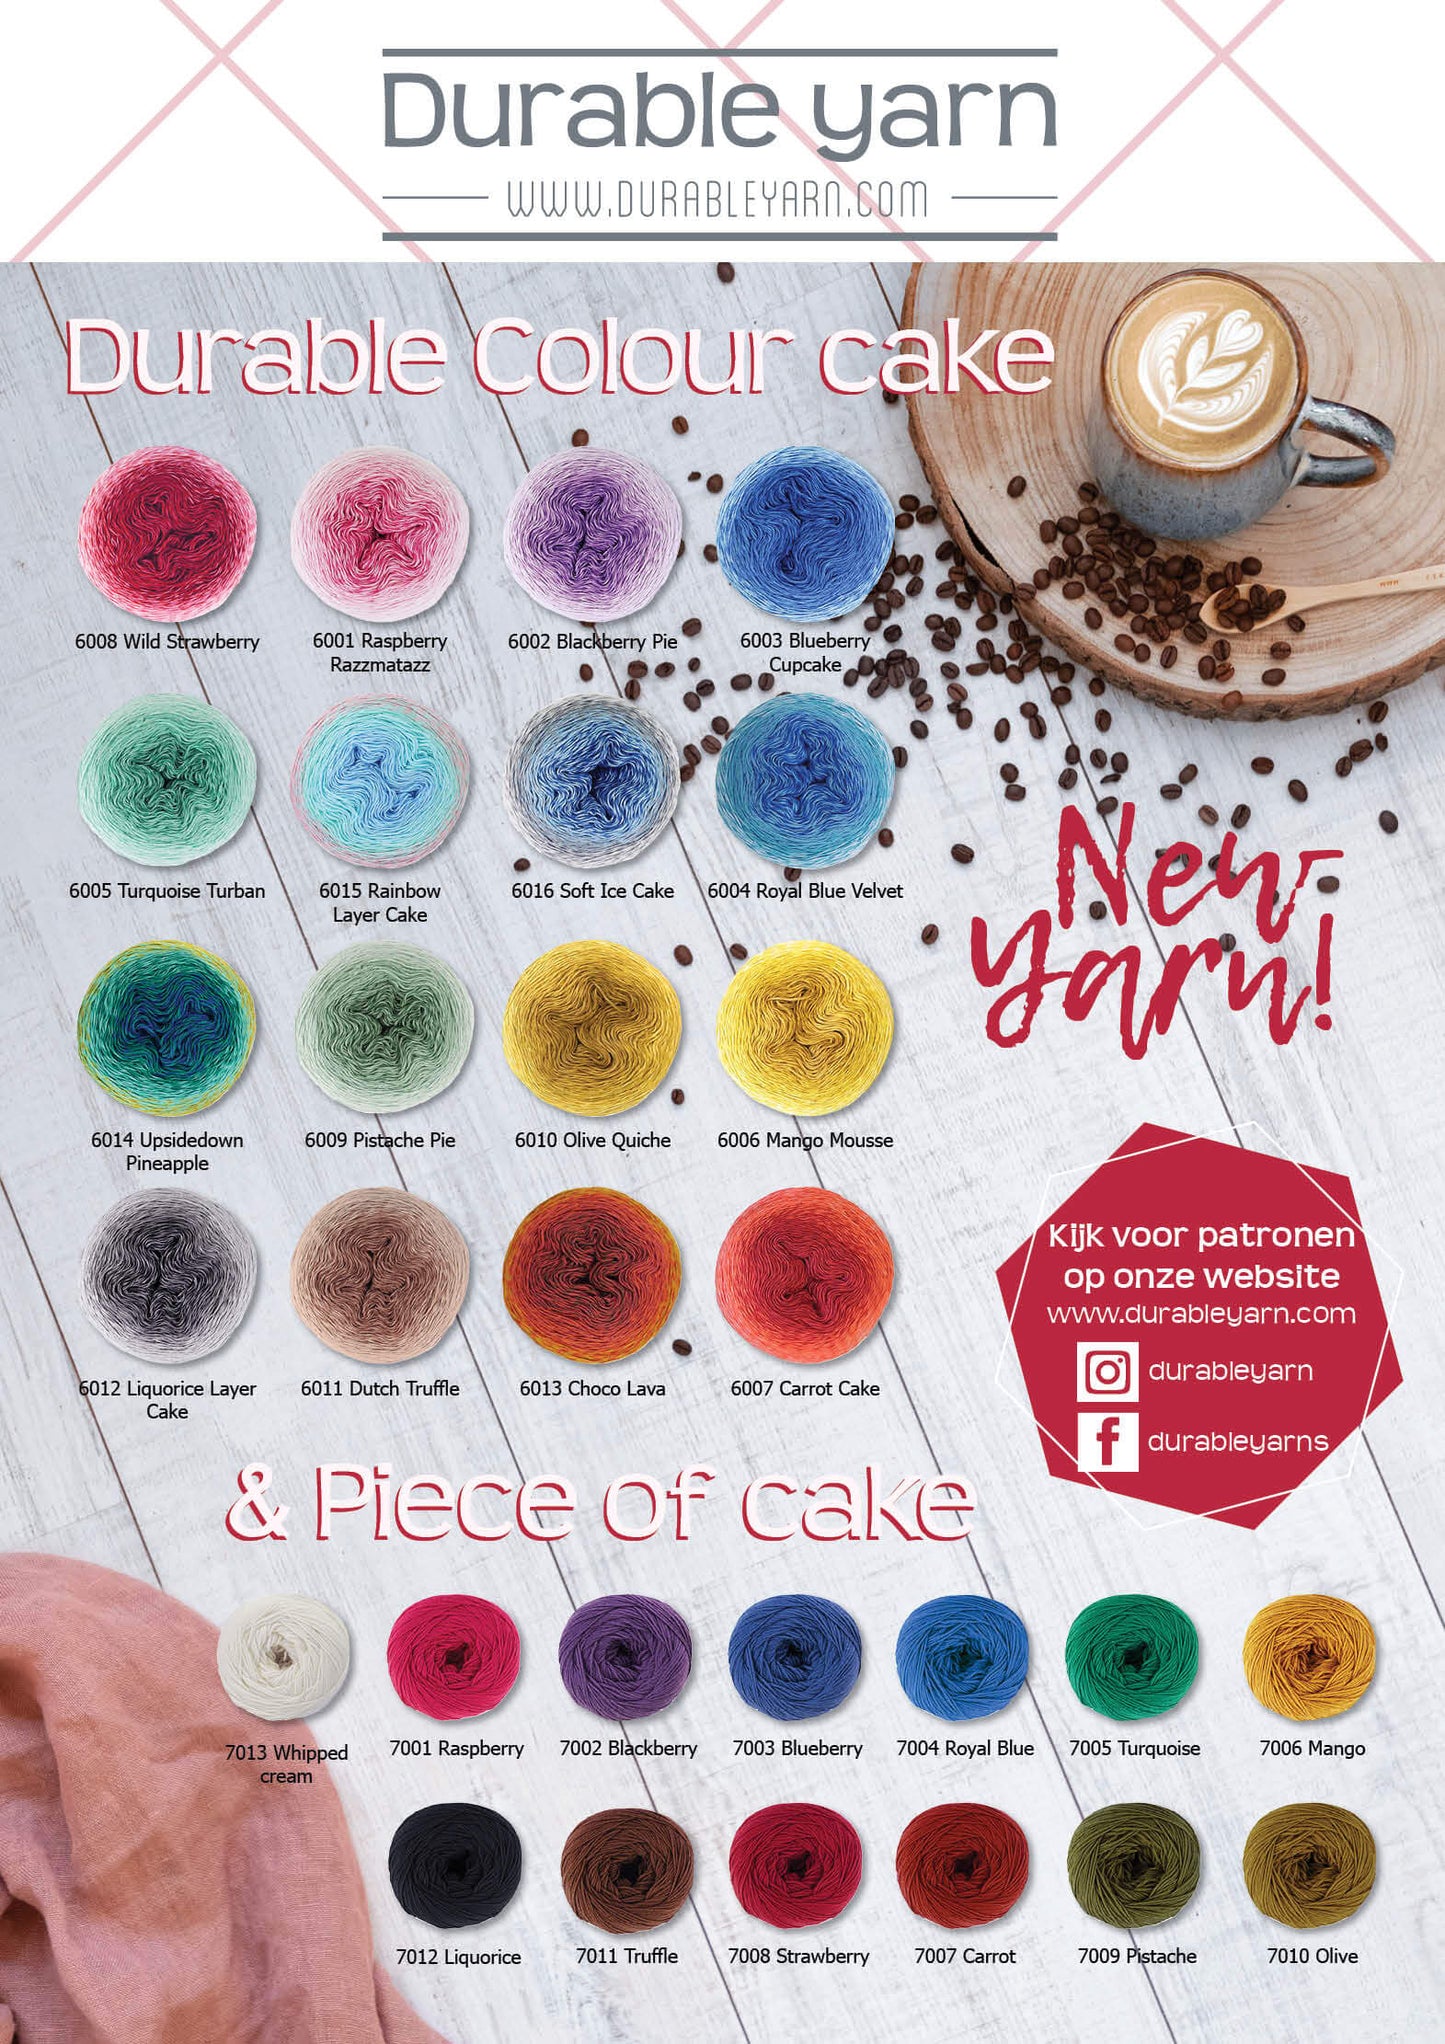 Durable Colour Cake - 6004 Royal Blue Velvet